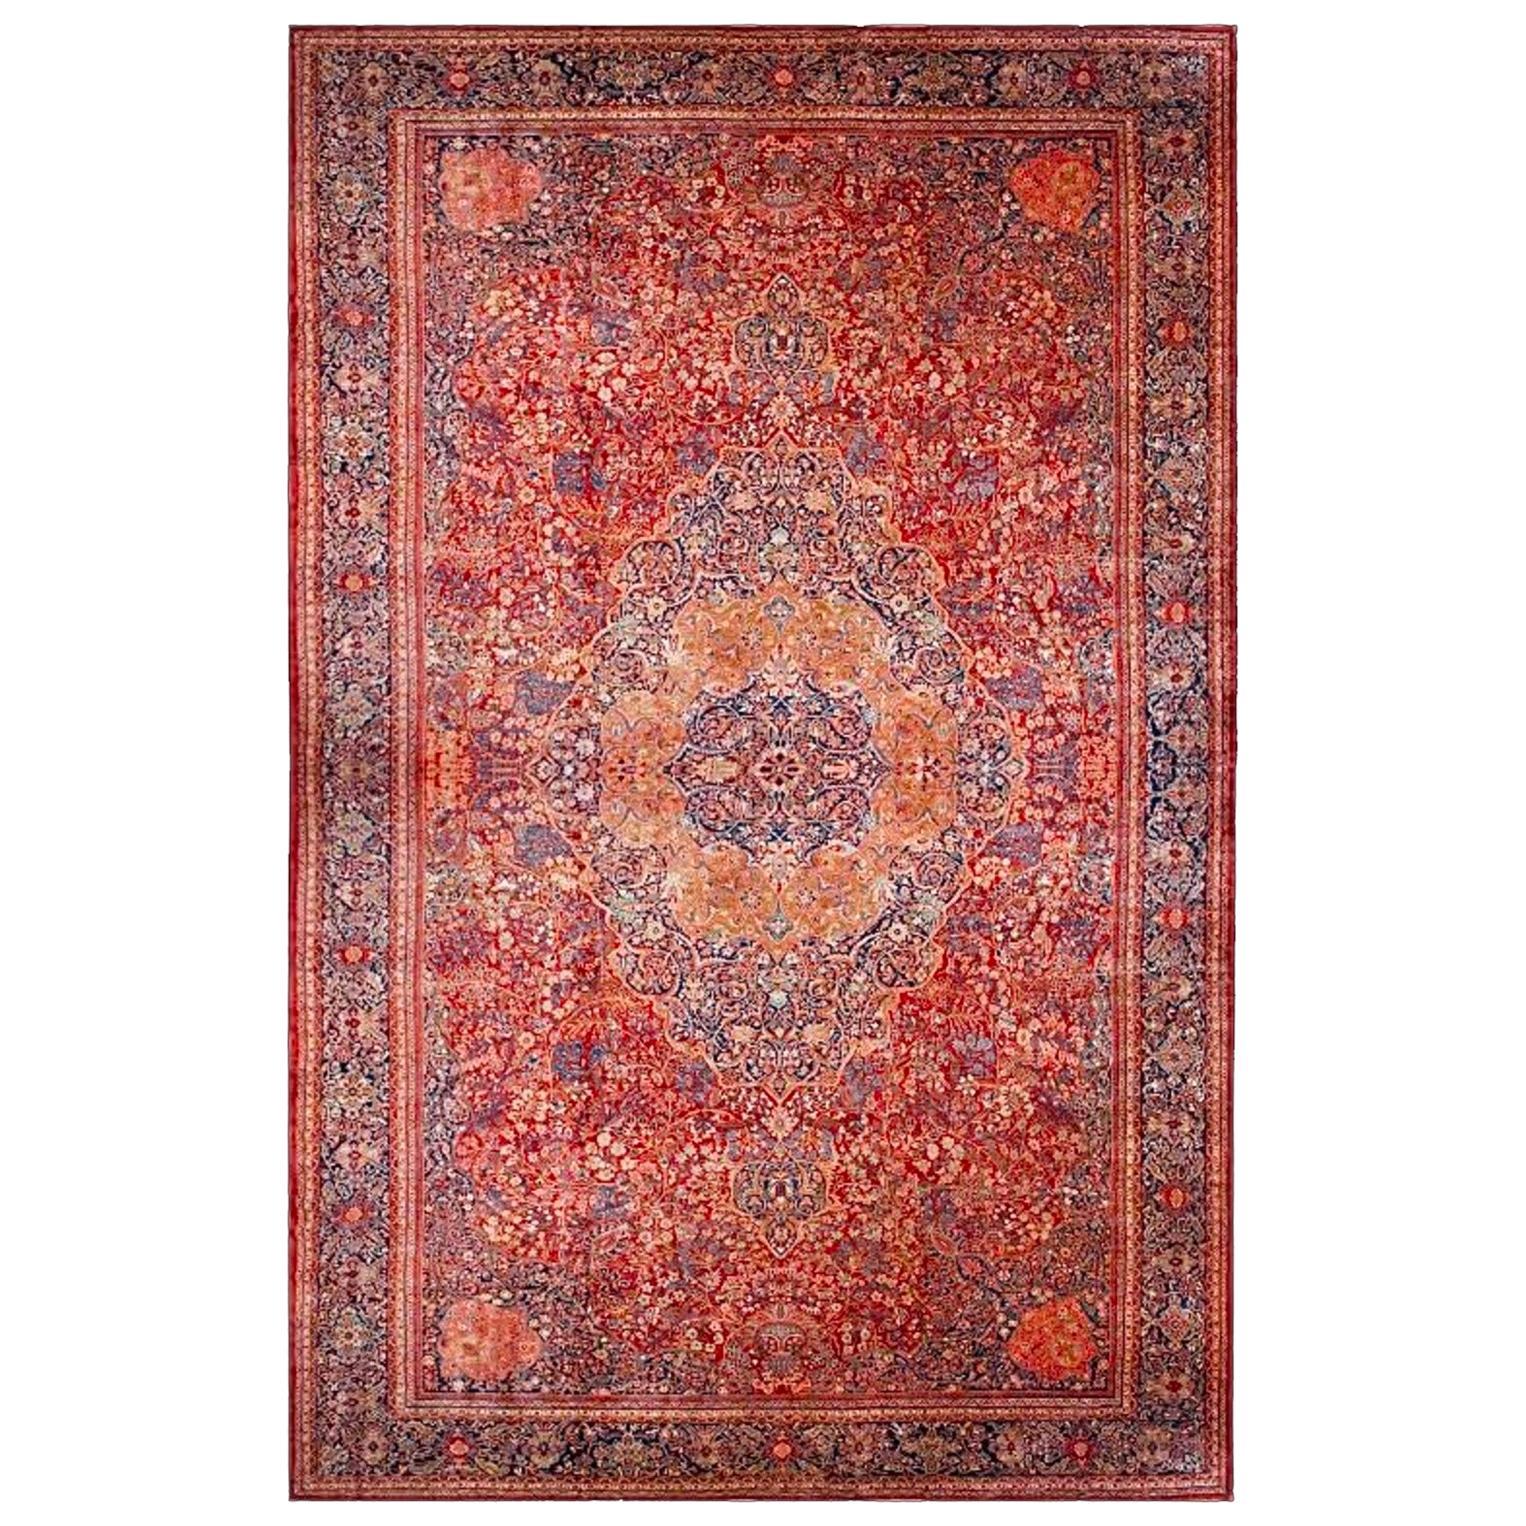 Antiker persischer roter Farahan-Sarouk-Teppich in Übergröße, um 1880-1900